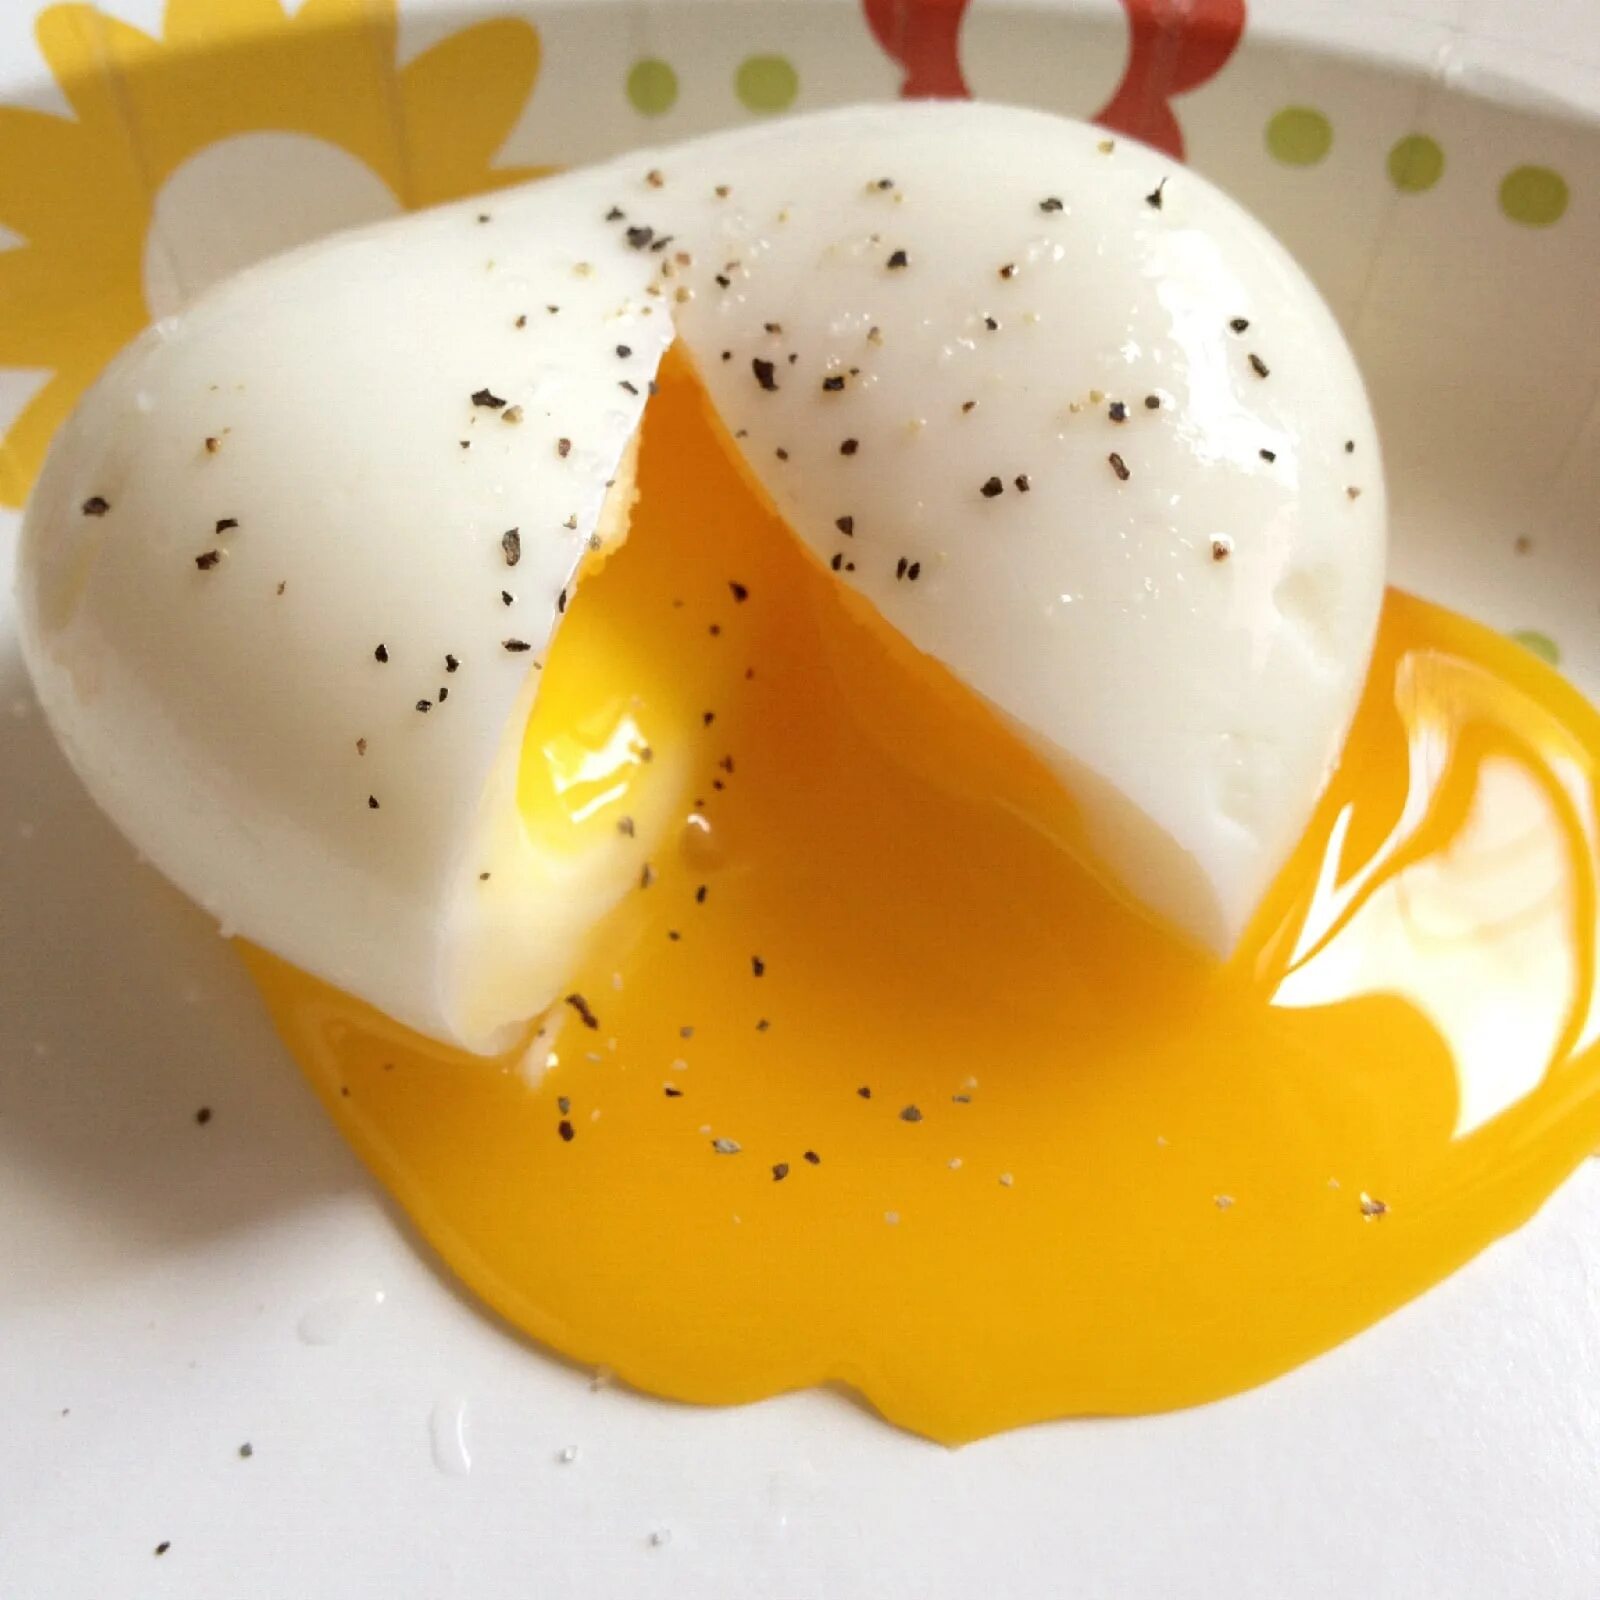 Яйца пашот всмятку. Яйцо пашот в мешочке. Яйцо вареное всмятку. Яйцо вкрутую всмятку пашот. Как варить в мешочек